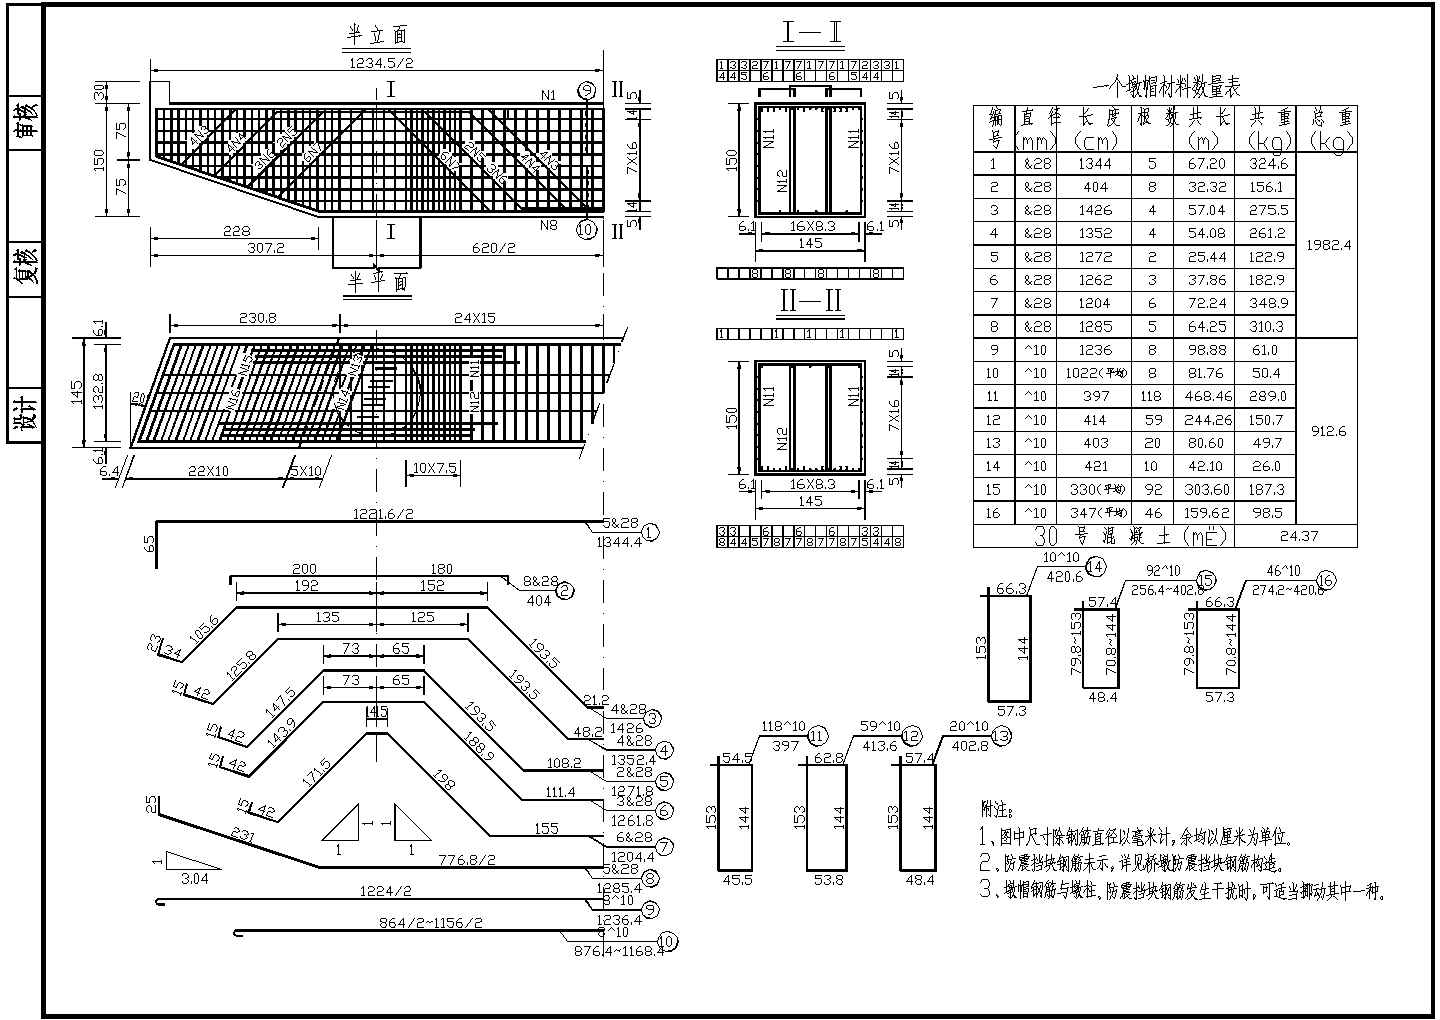 7x20m预应力混凝土空心板桥墩盖梁钢筋构造节点详图设计